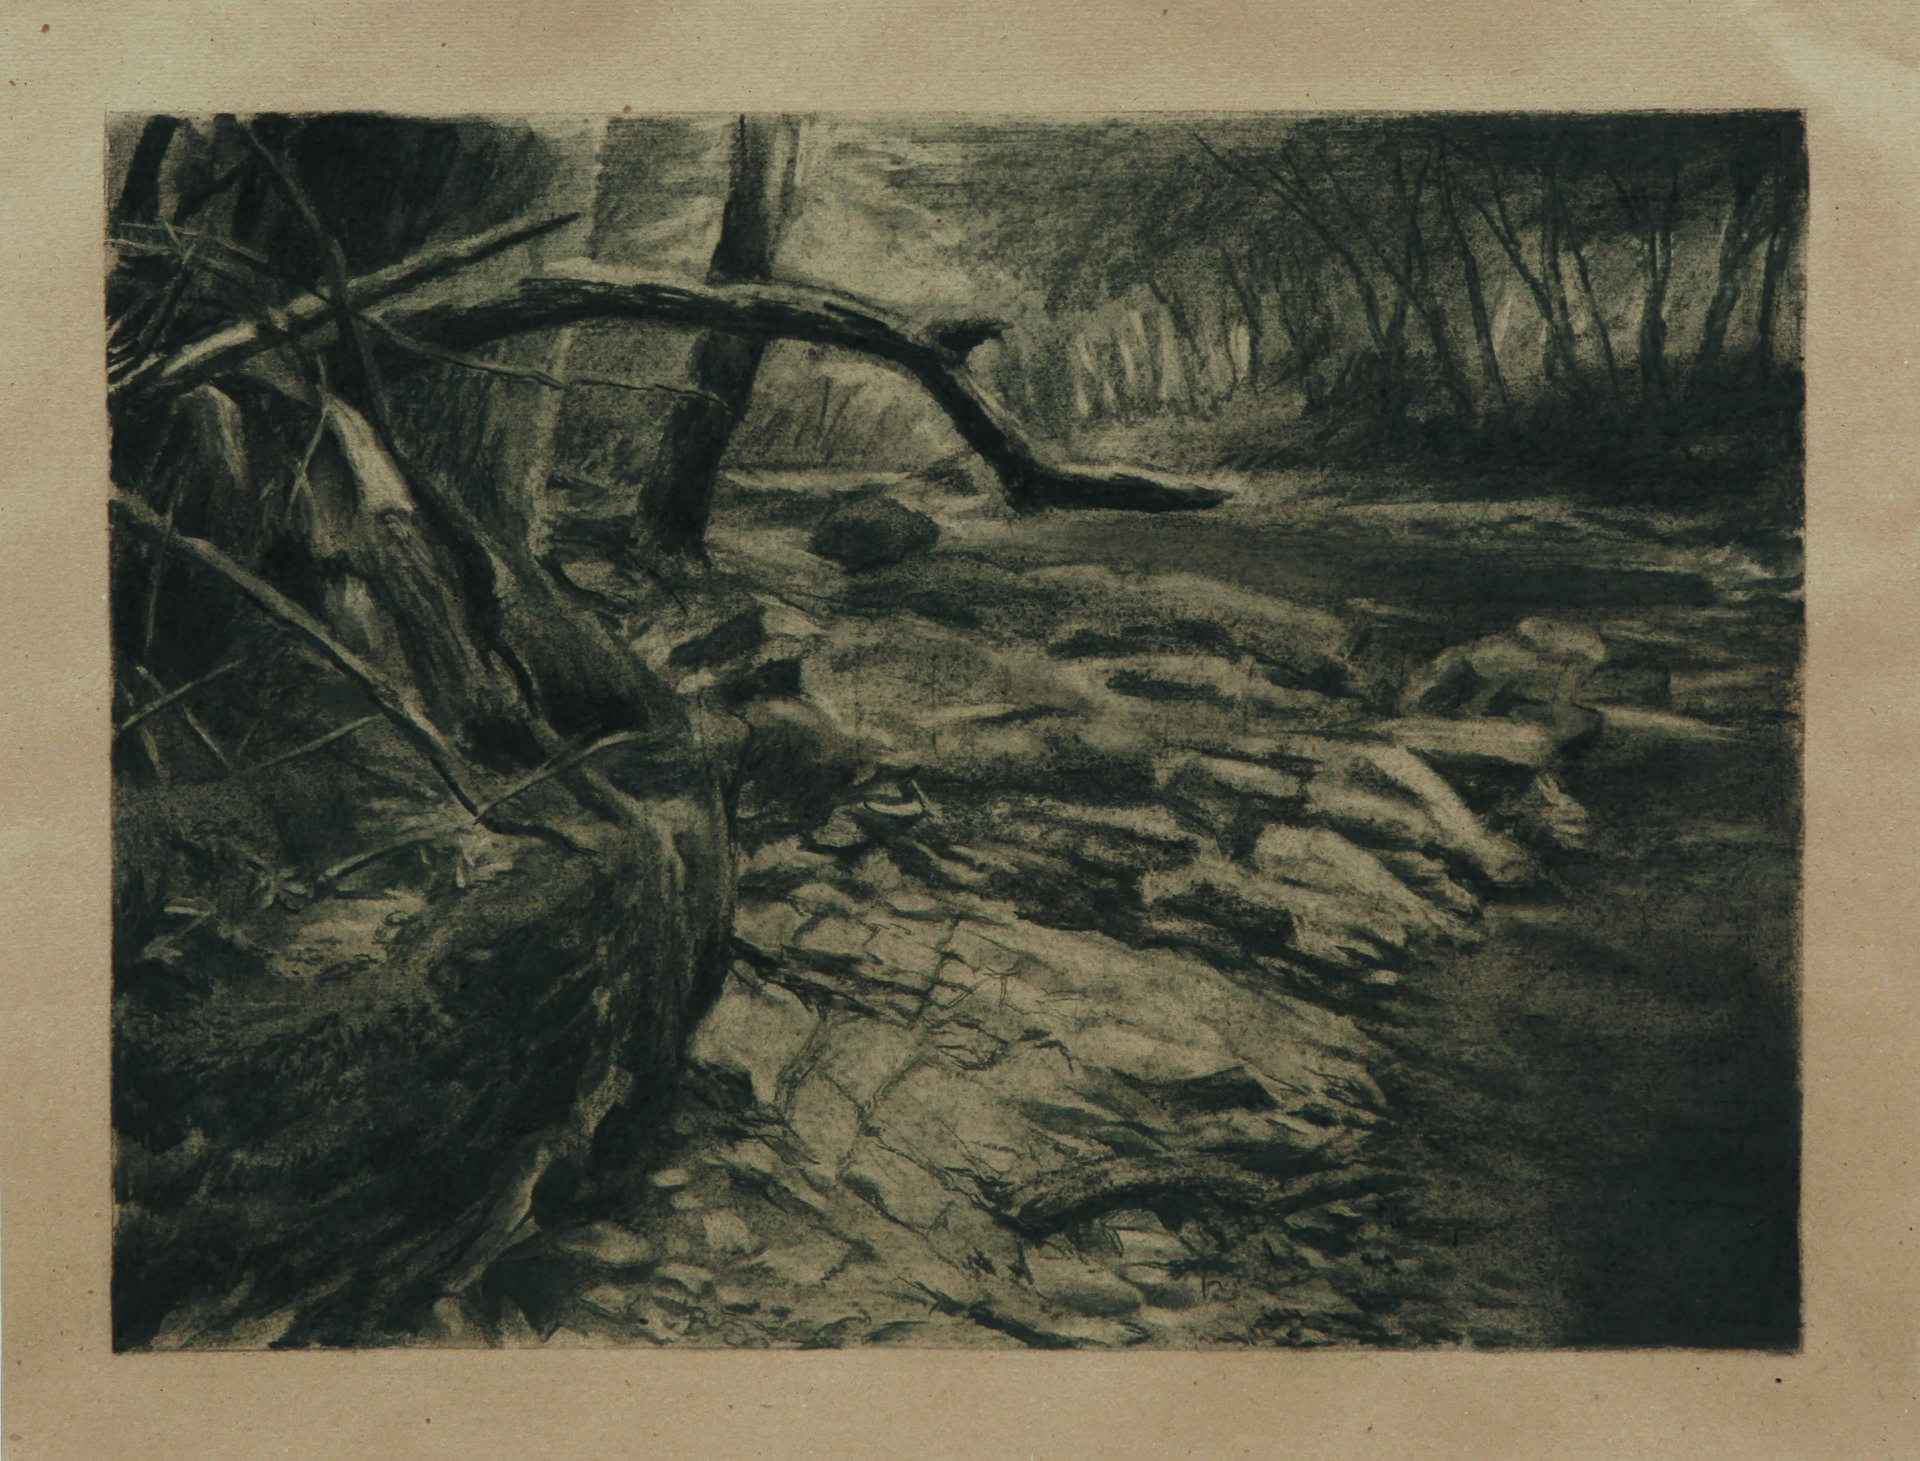 La potence, Fusain sur papier, 64 x 84 cm, 2014, Collection privée